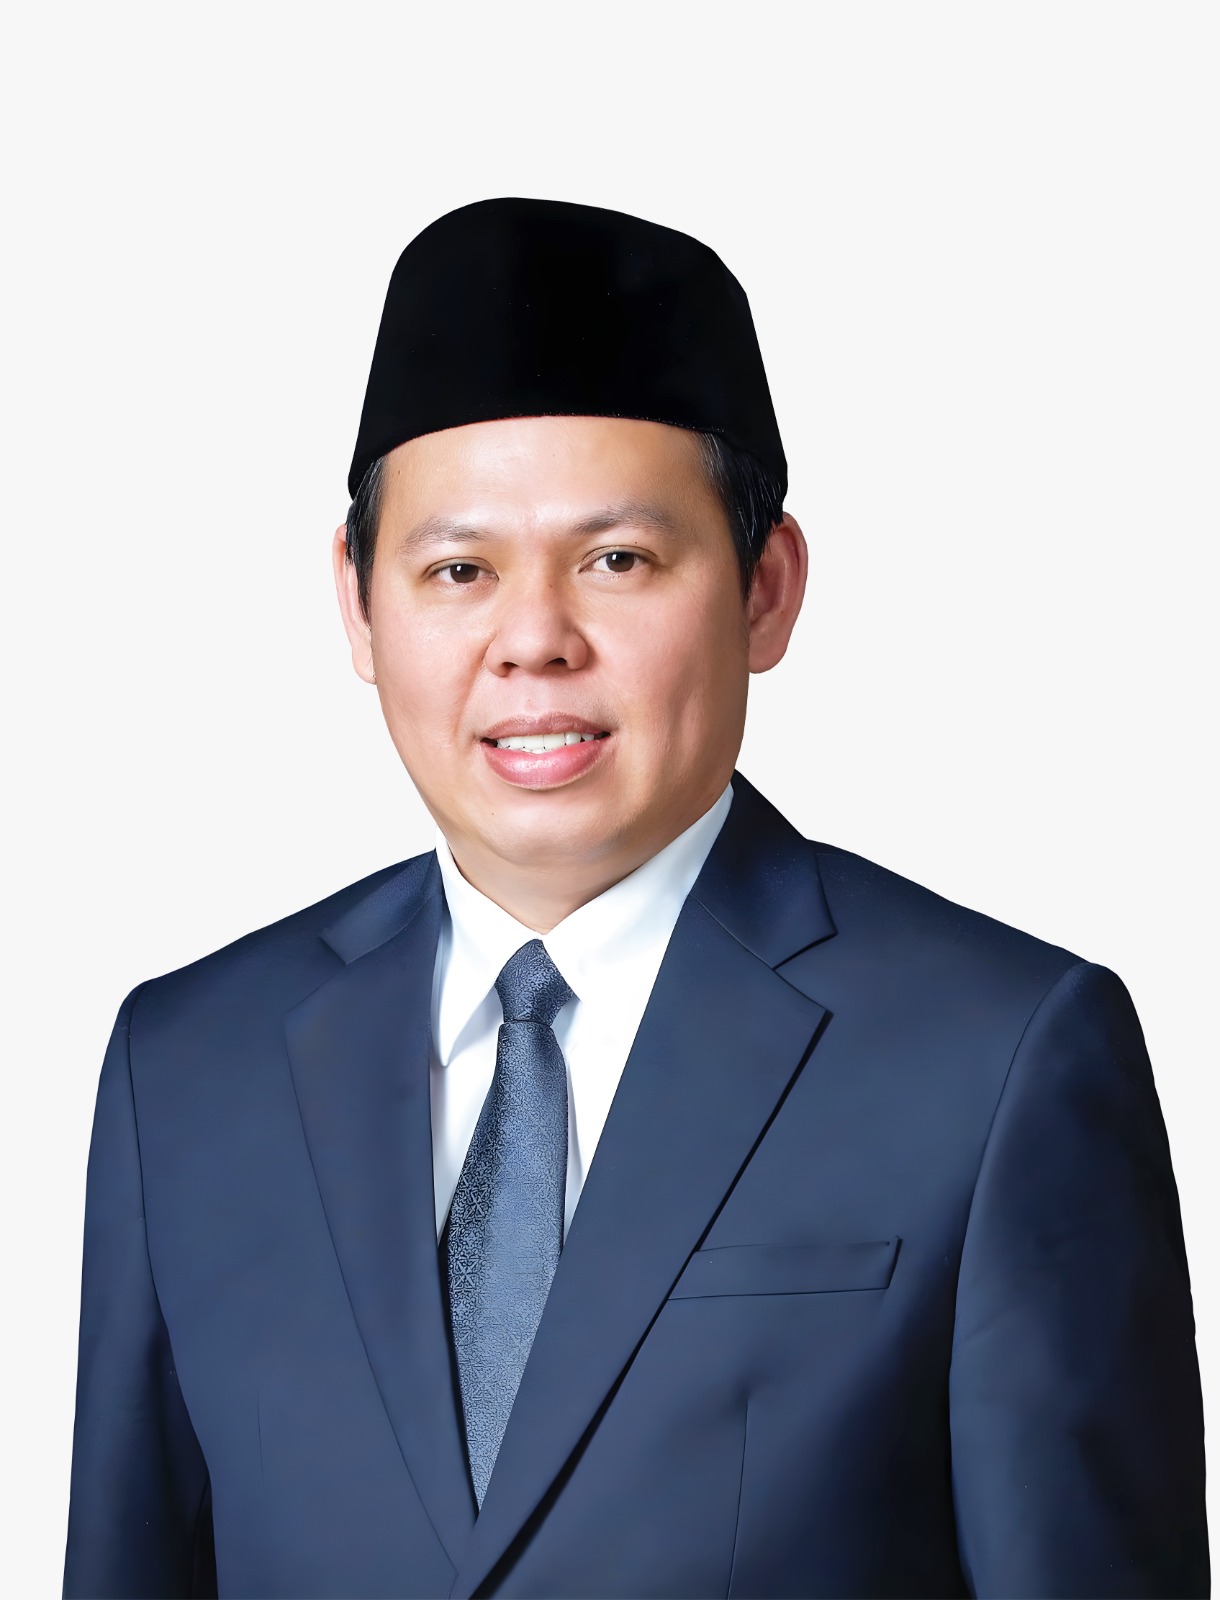 Sultan Imbau KPU dan Bawaslu Bekerja Maksimal Persiapkan Pemilu 2024